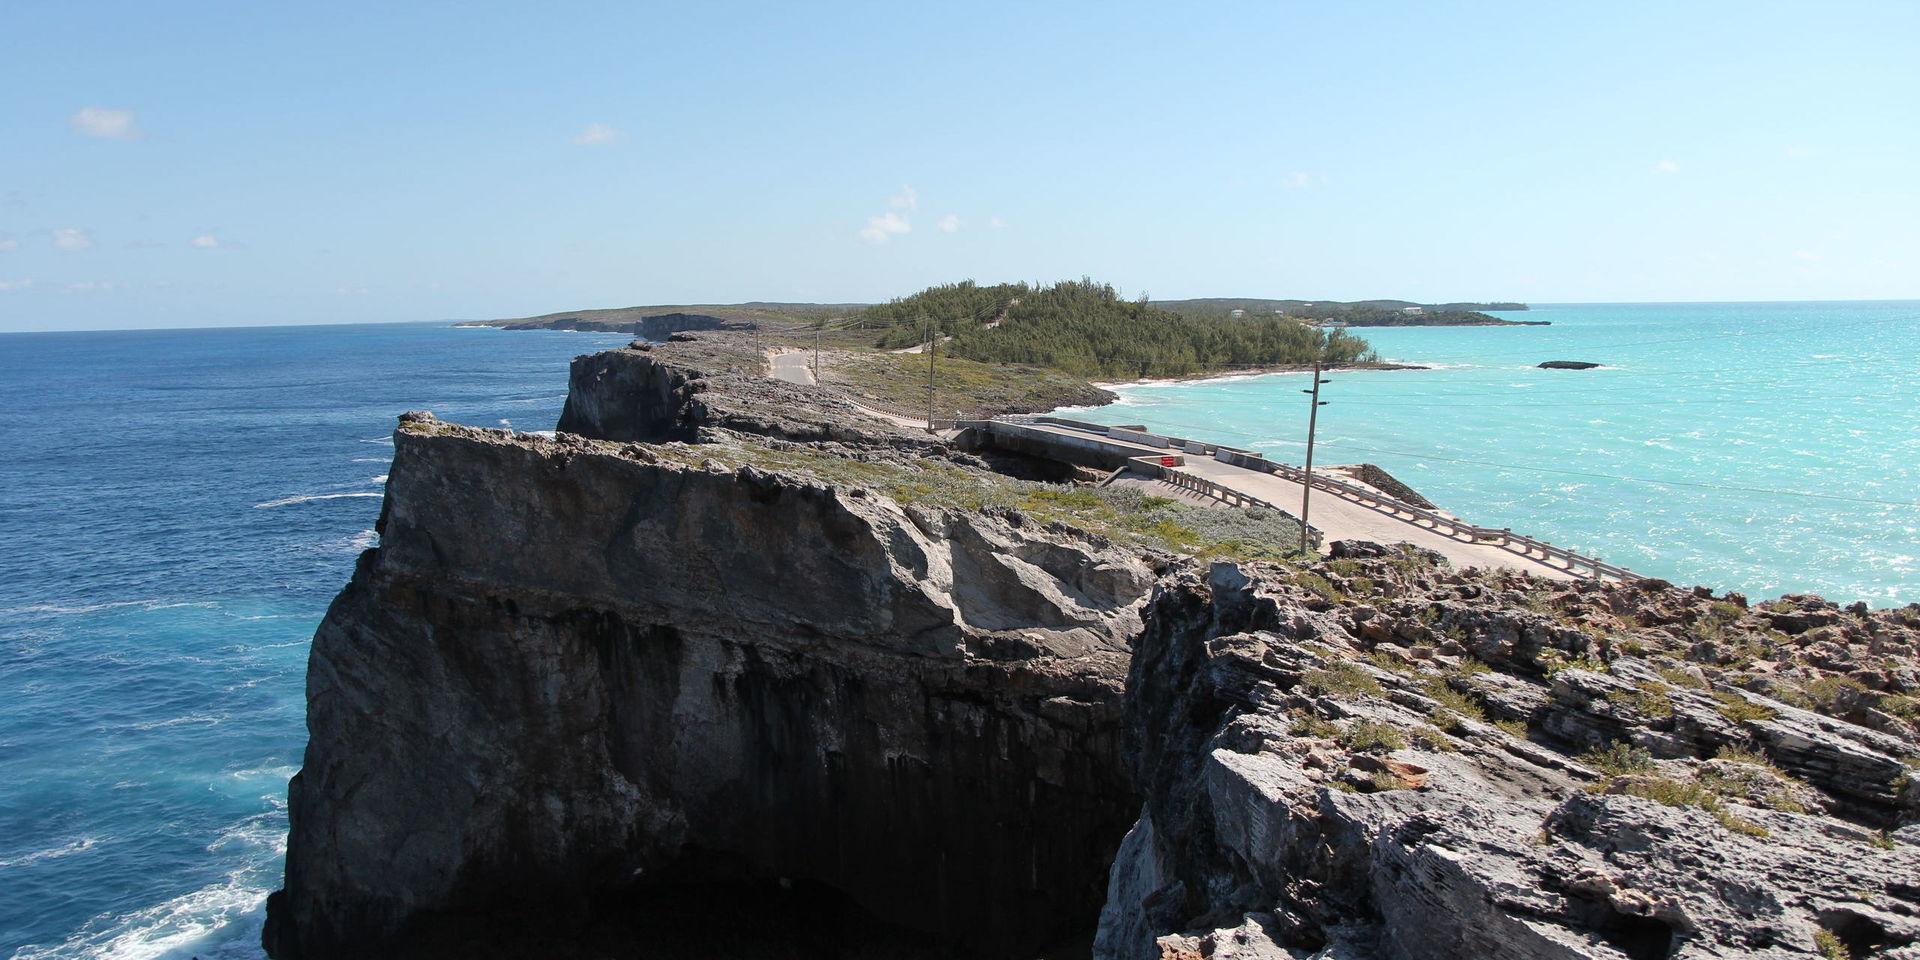 Hav möter hav. Glass Window Bridge är kanske Bahamas märkligaste syn. På ena sidan den mörkblå Atlanten och på andra sidan den ljusblå Eleutherabukten